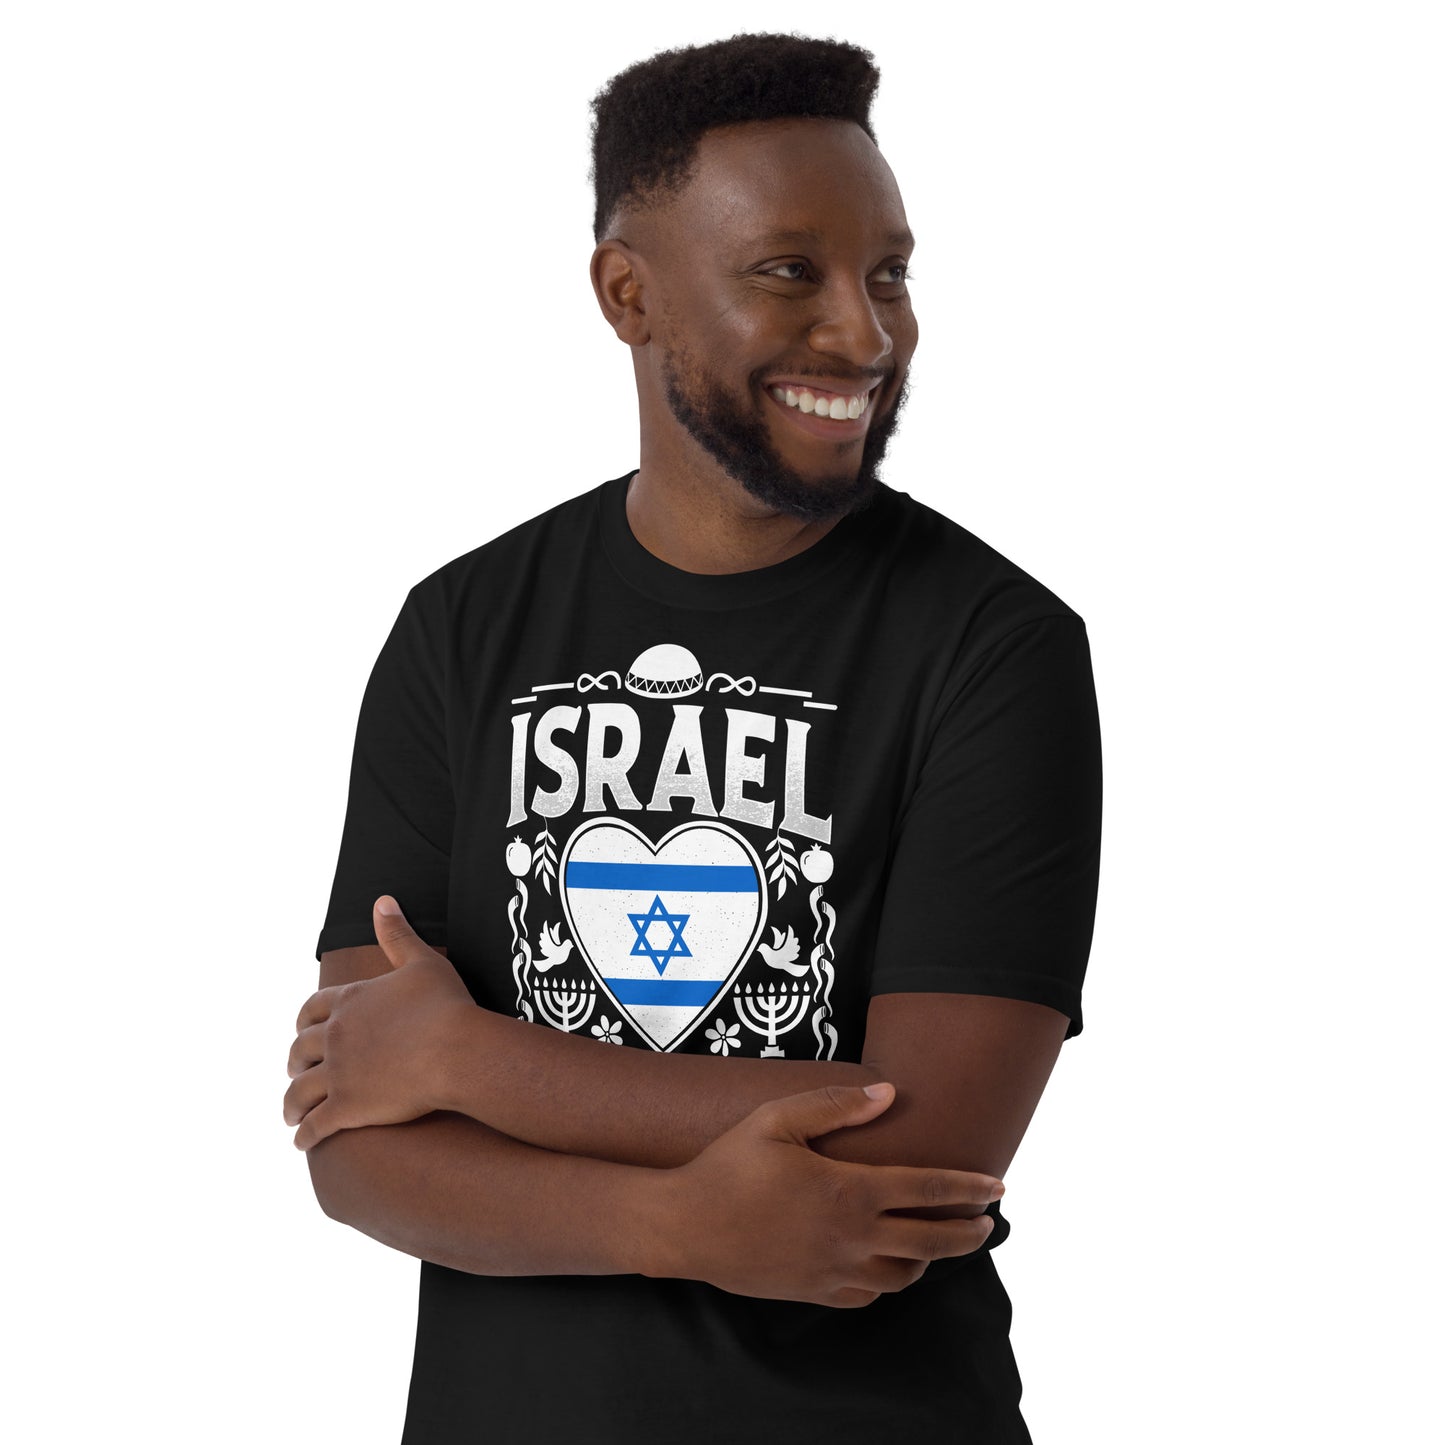 Israel es mi corazón camiseta de algodón unisex